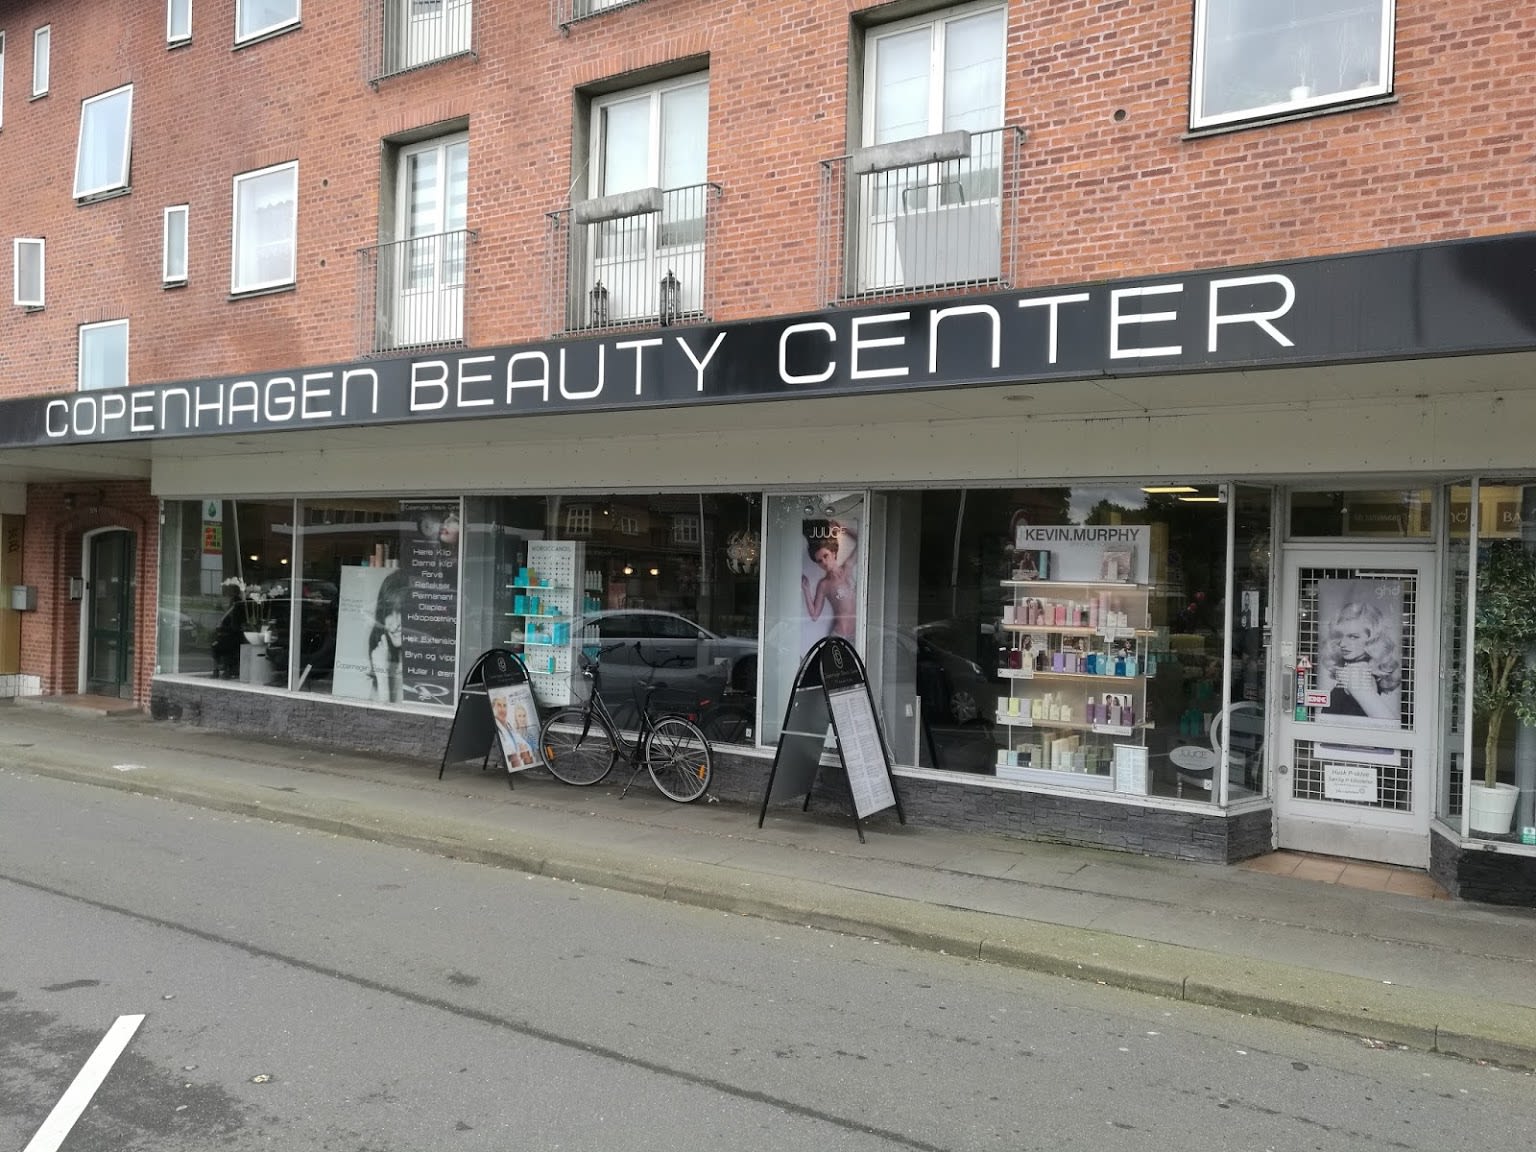 Copenhagen Beauty Center